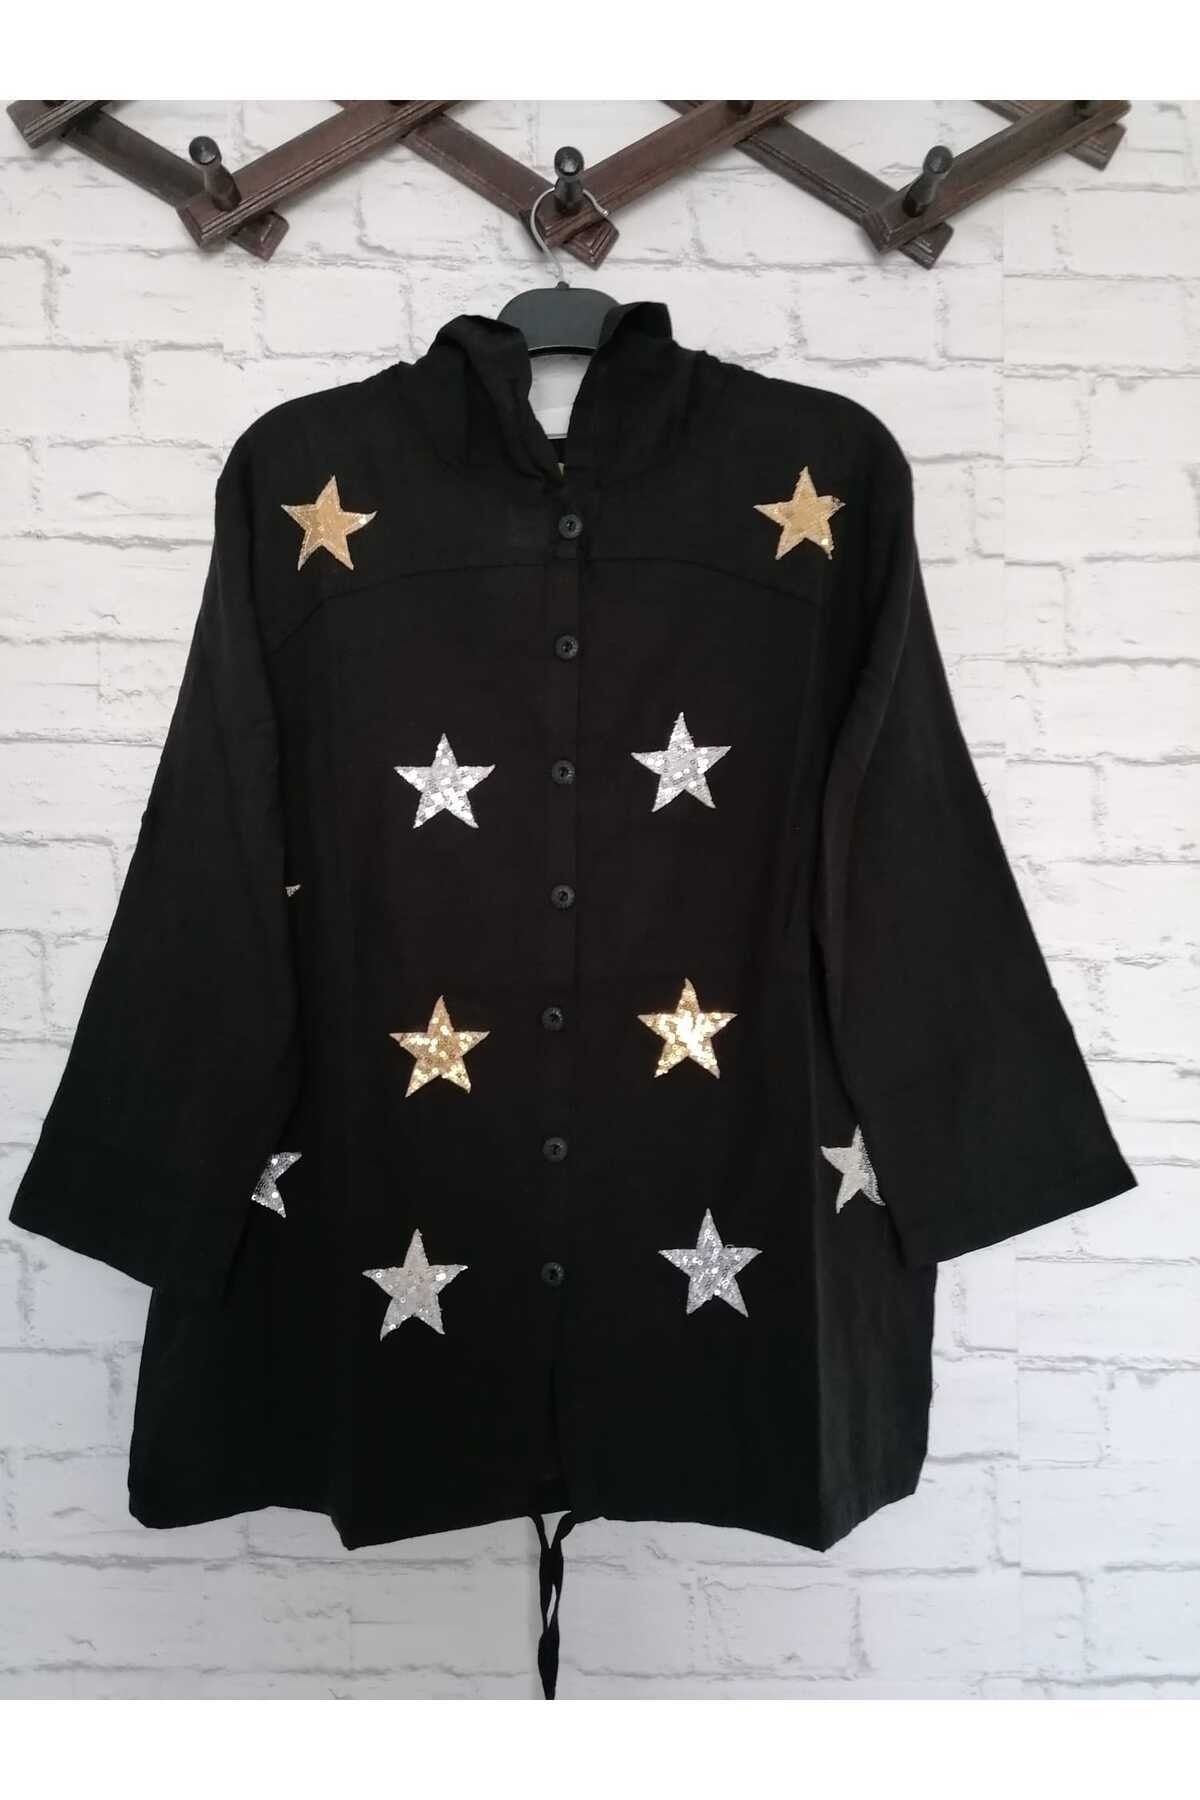 anne moda ankara Kapüşonlu ışıltılı, yıldız desenli, altı bağcıklı, truvakar kollu spor ceket/hırka